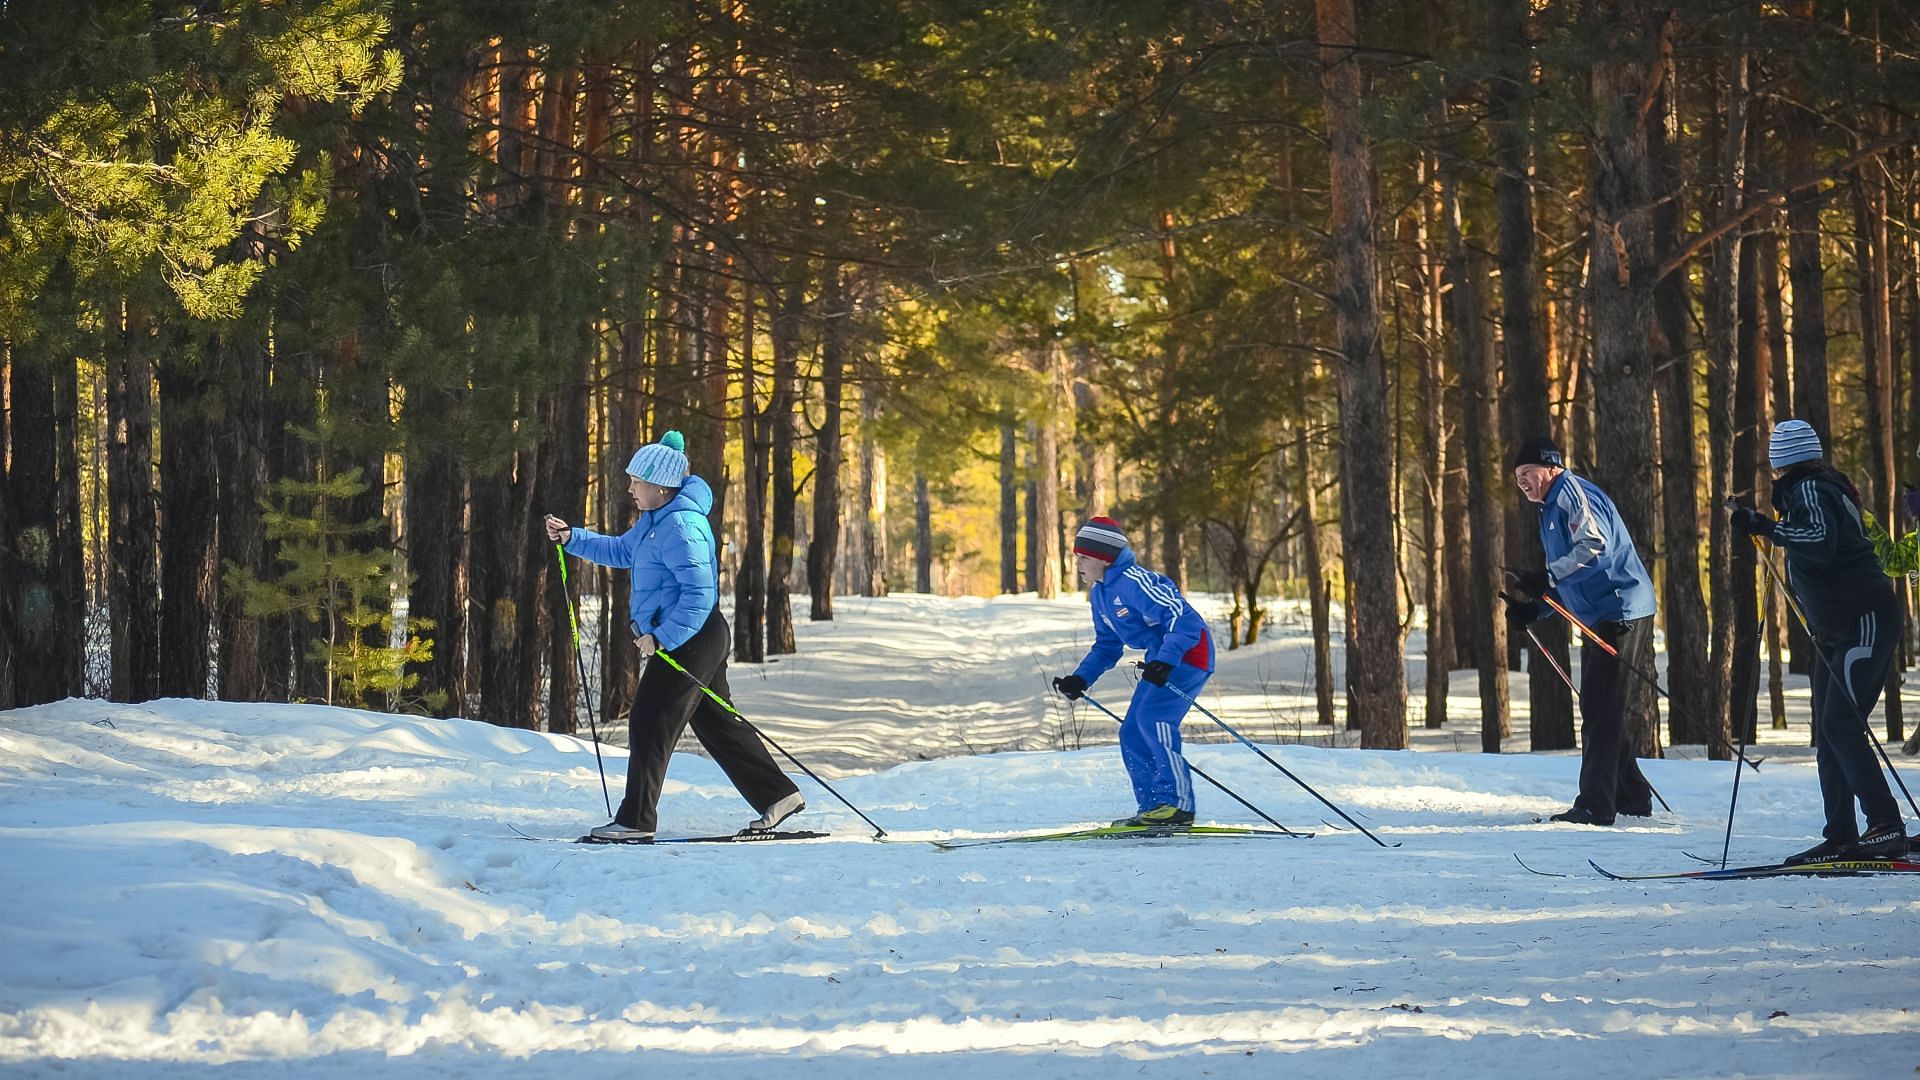 Skiing (Image via Pexels)